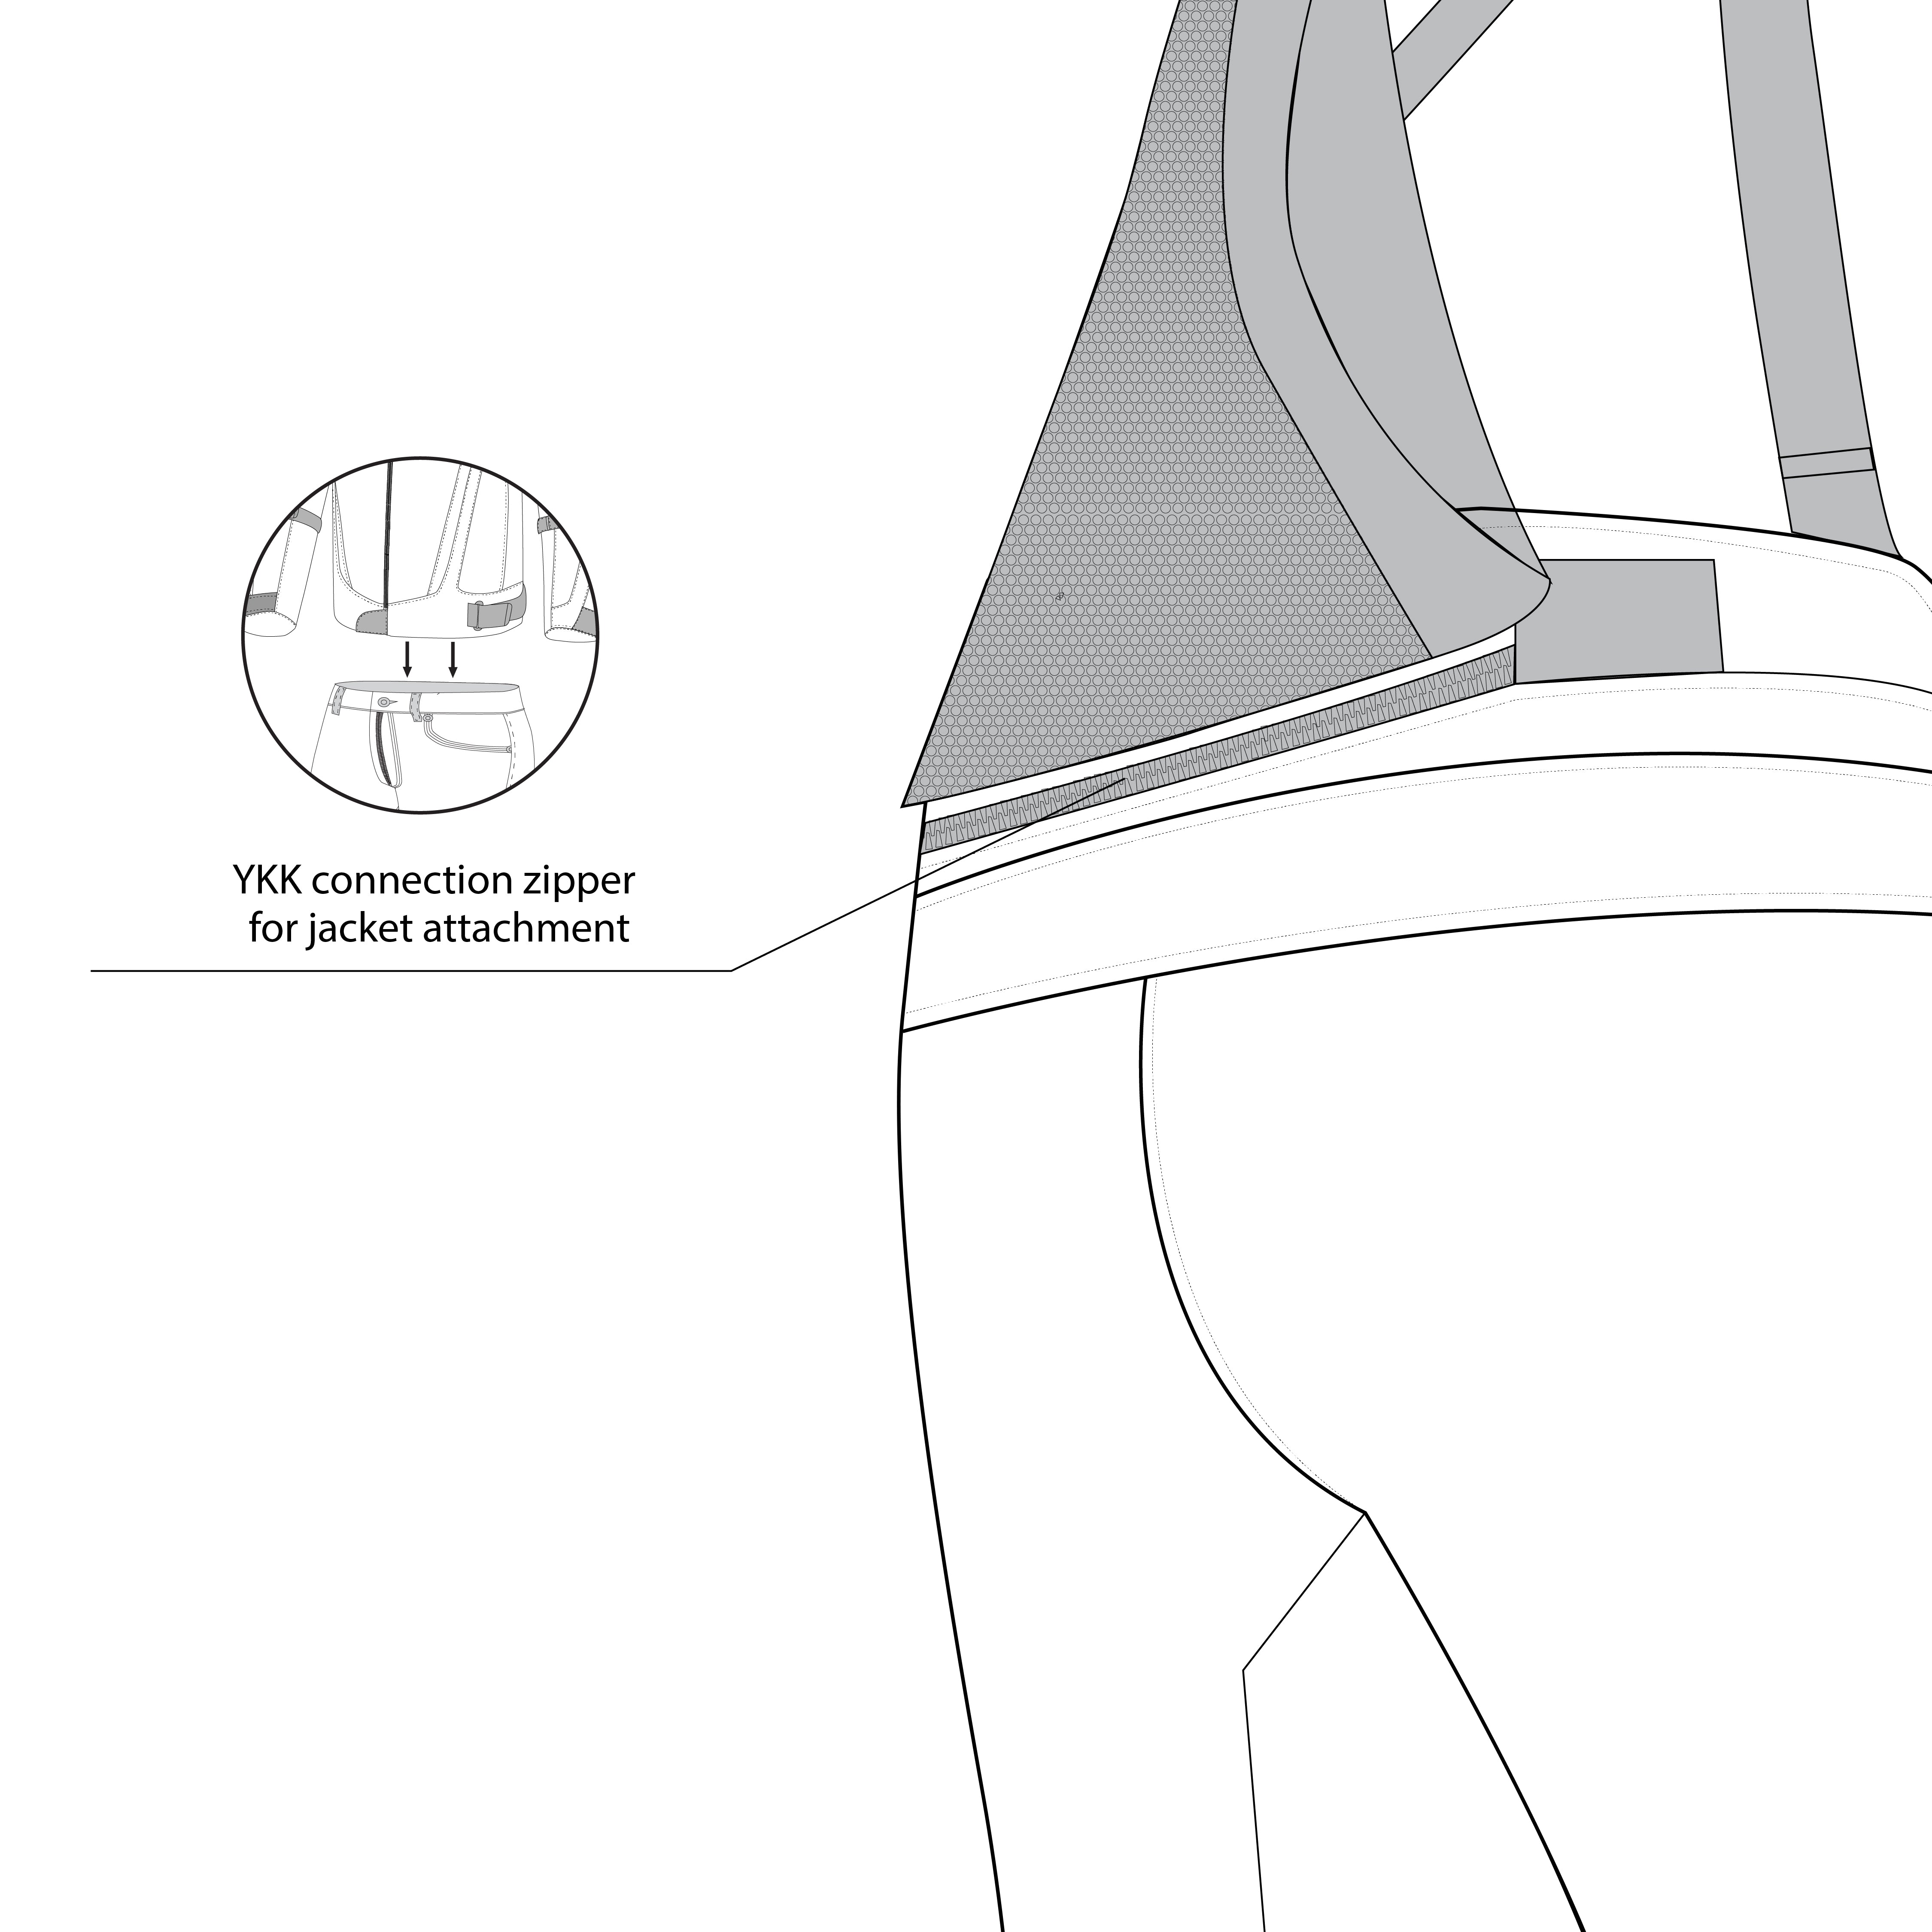 infographic sketch bela calm digger short winter textile pant black back side view